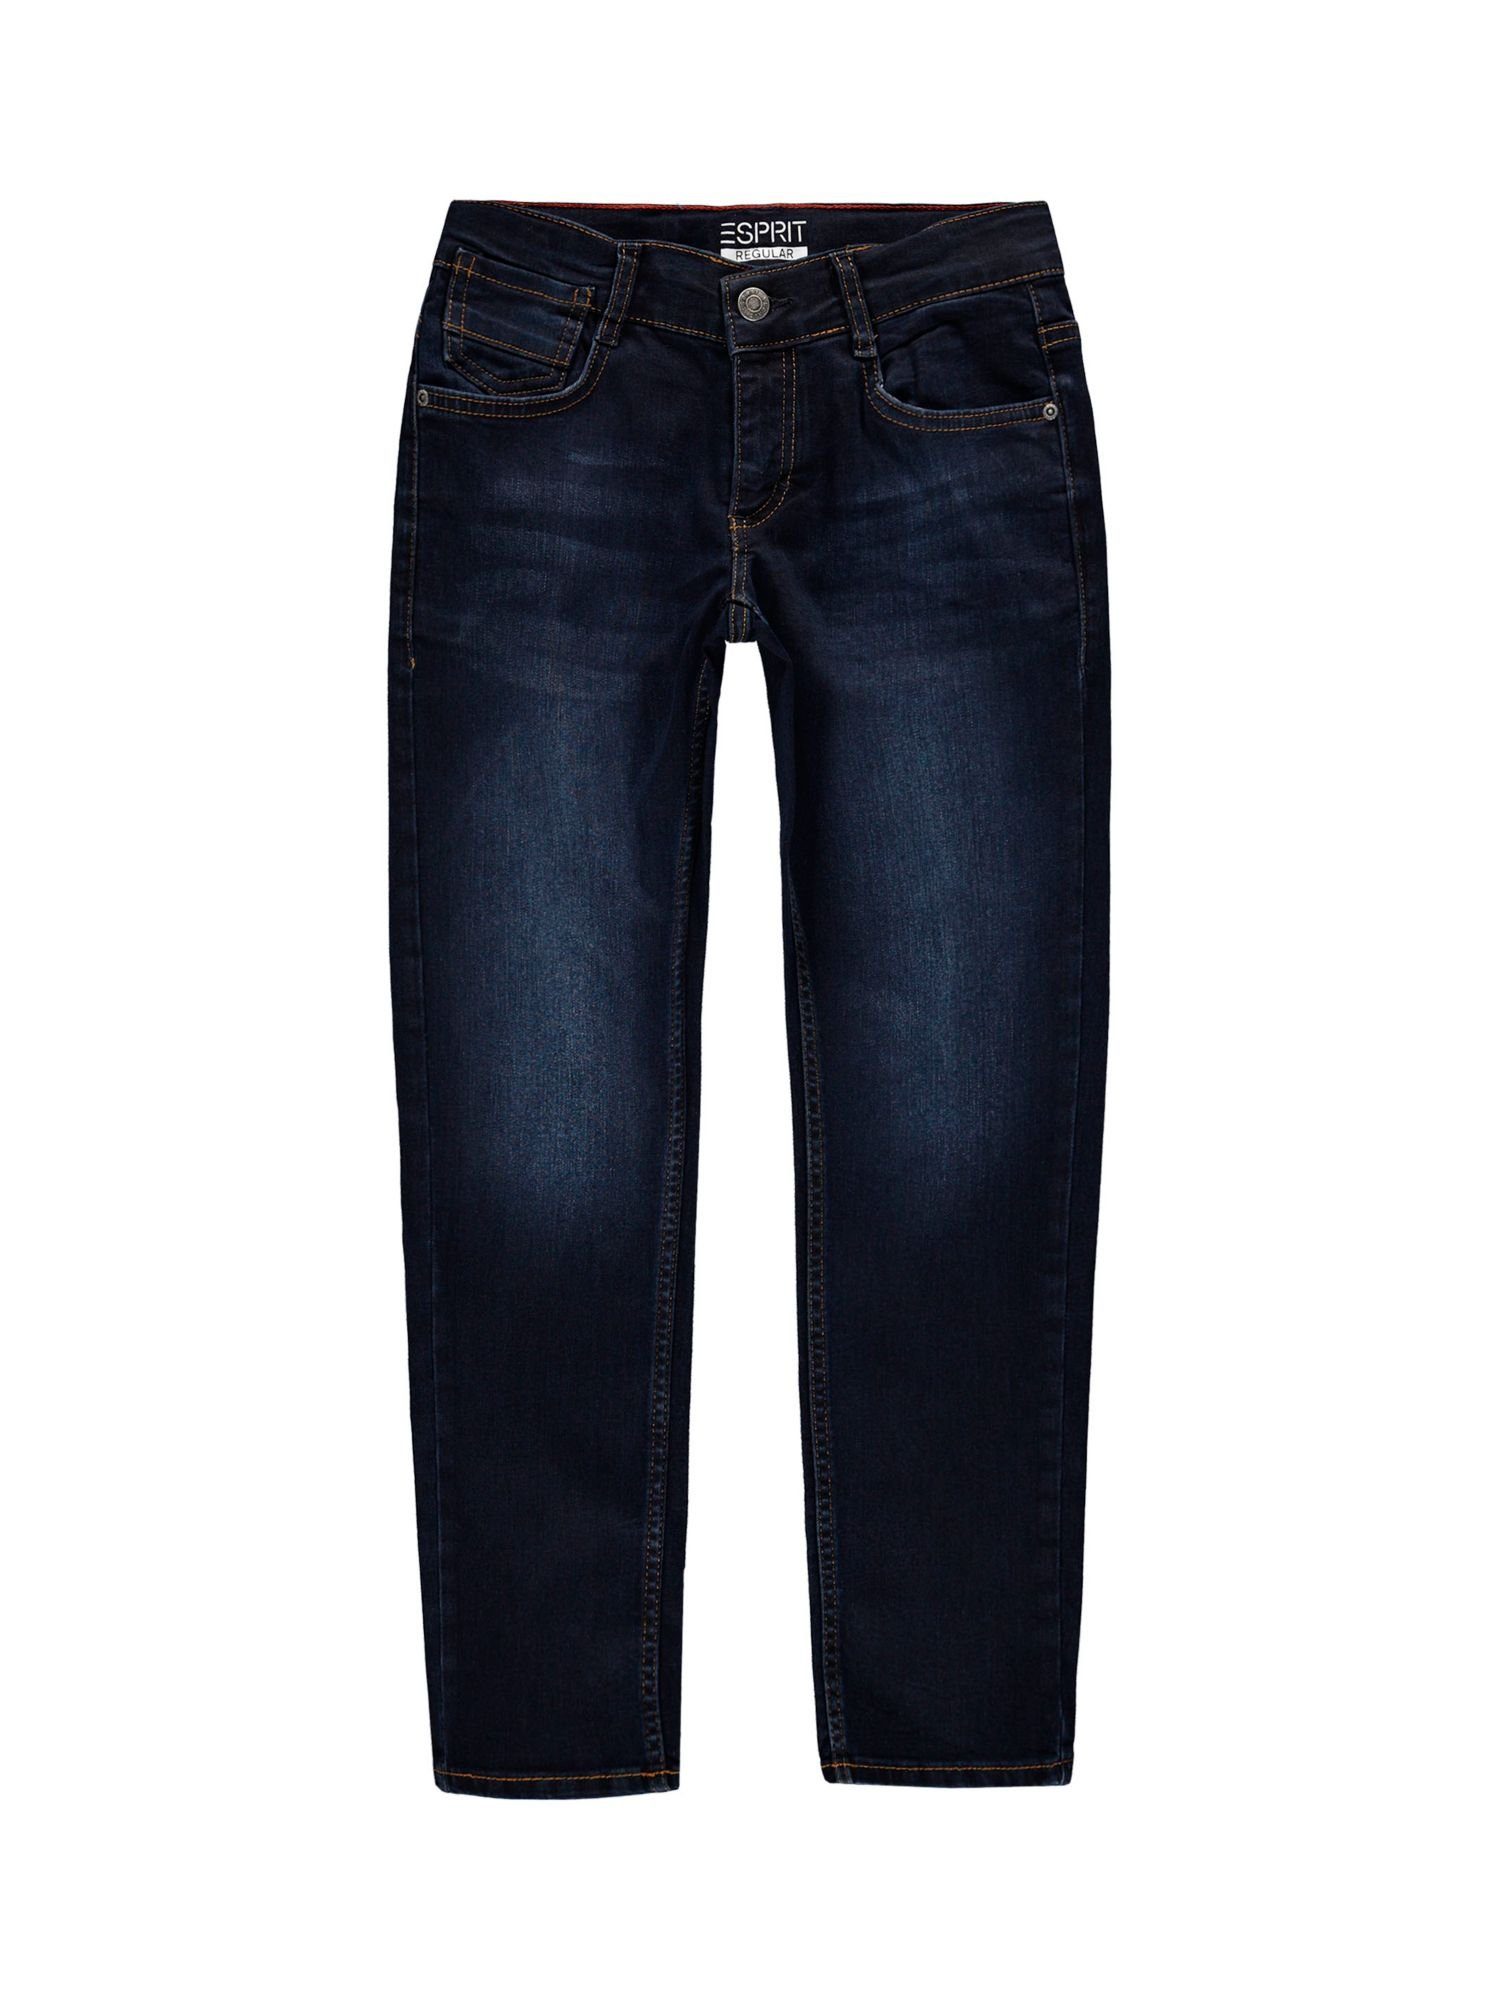 Esprit Slim-fit-Jeans Jeans mit Verstellbund